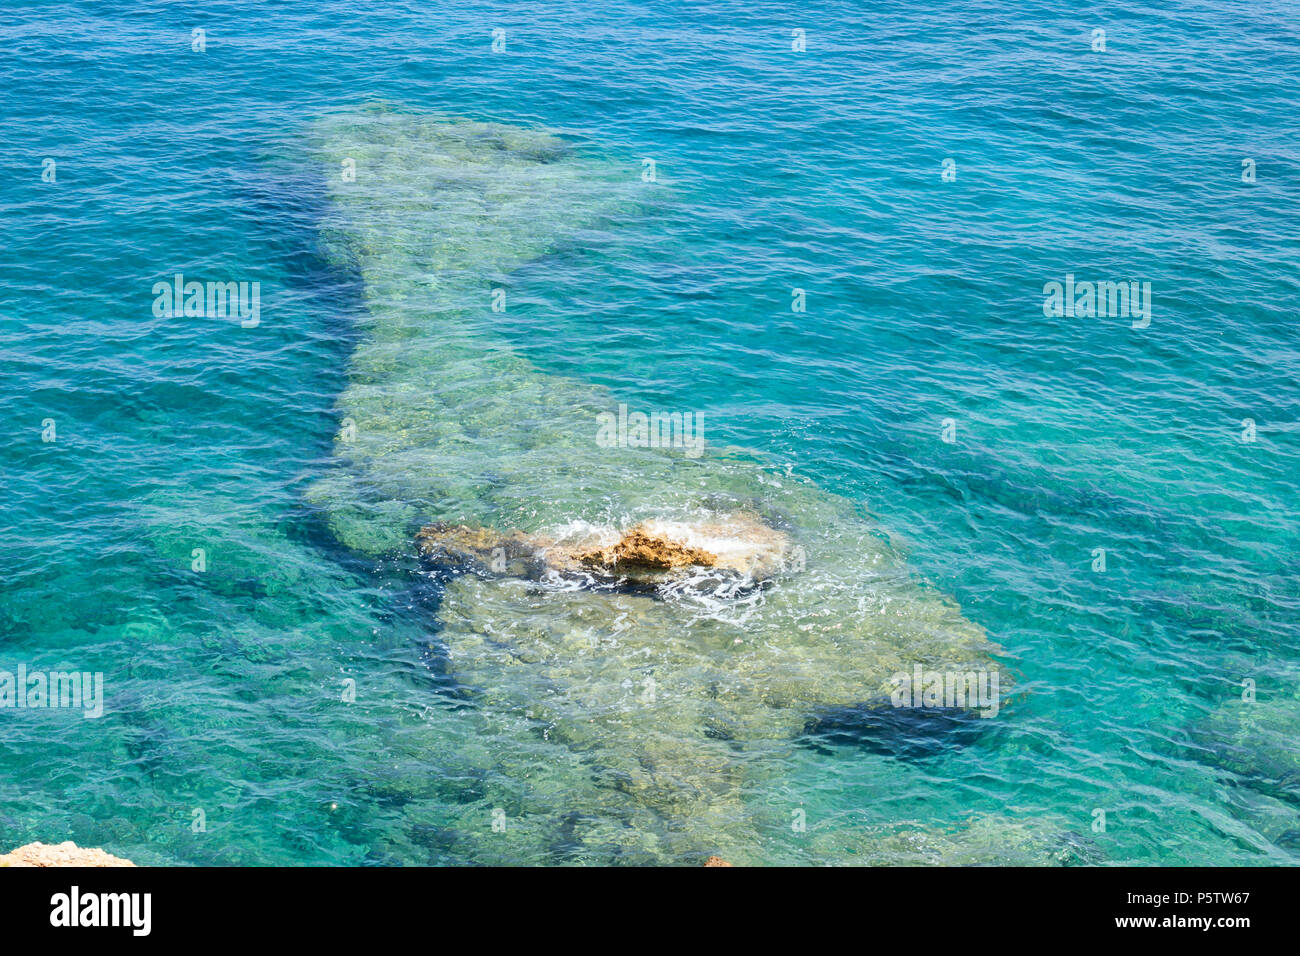 Crystal clear trasparenti acque turchesi del Mar Mediterraneo nei pressi di costa rocciosa in Turchia, regione di Antalya Foto Stock